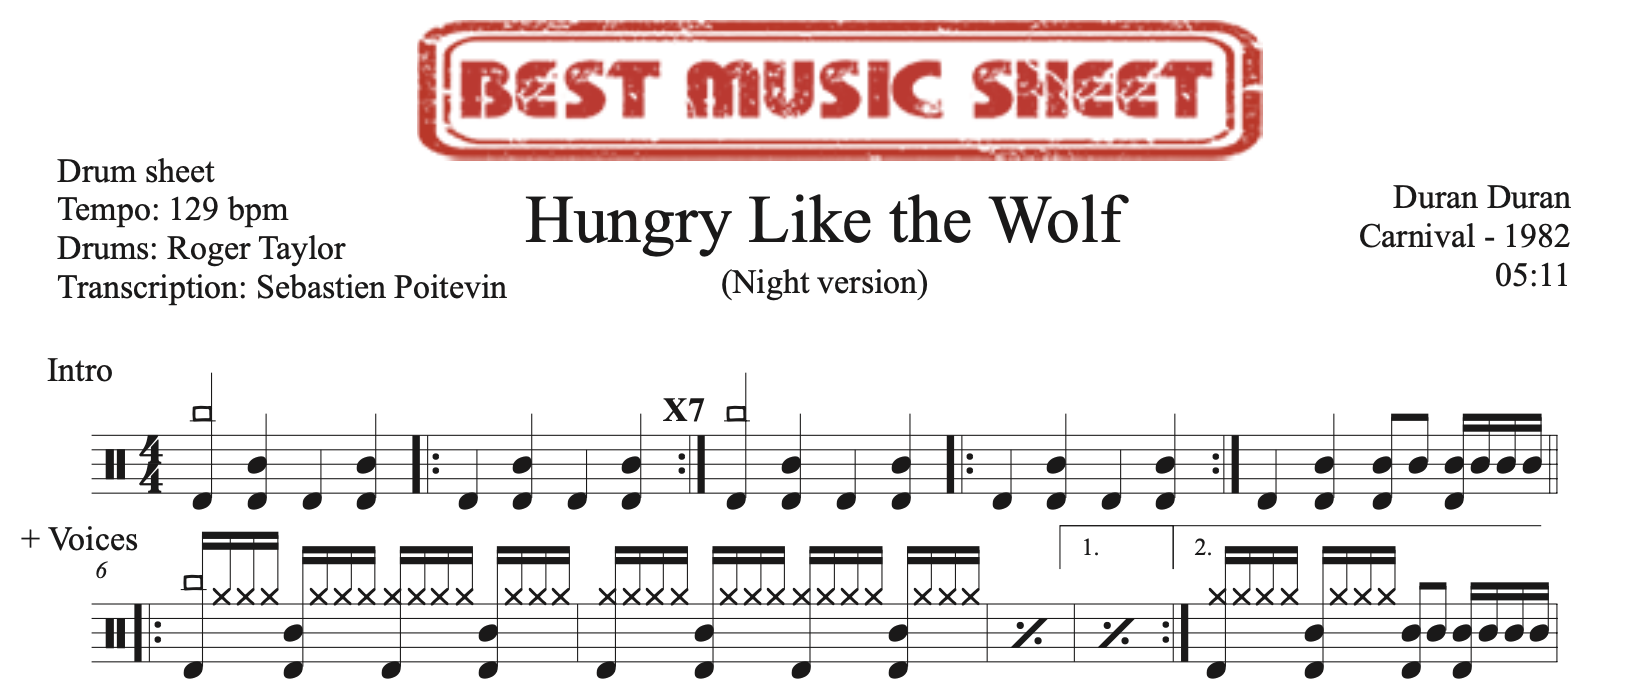 Extrait de la partition de batterie Hungry Like the Wolf Night version de Duran Duran